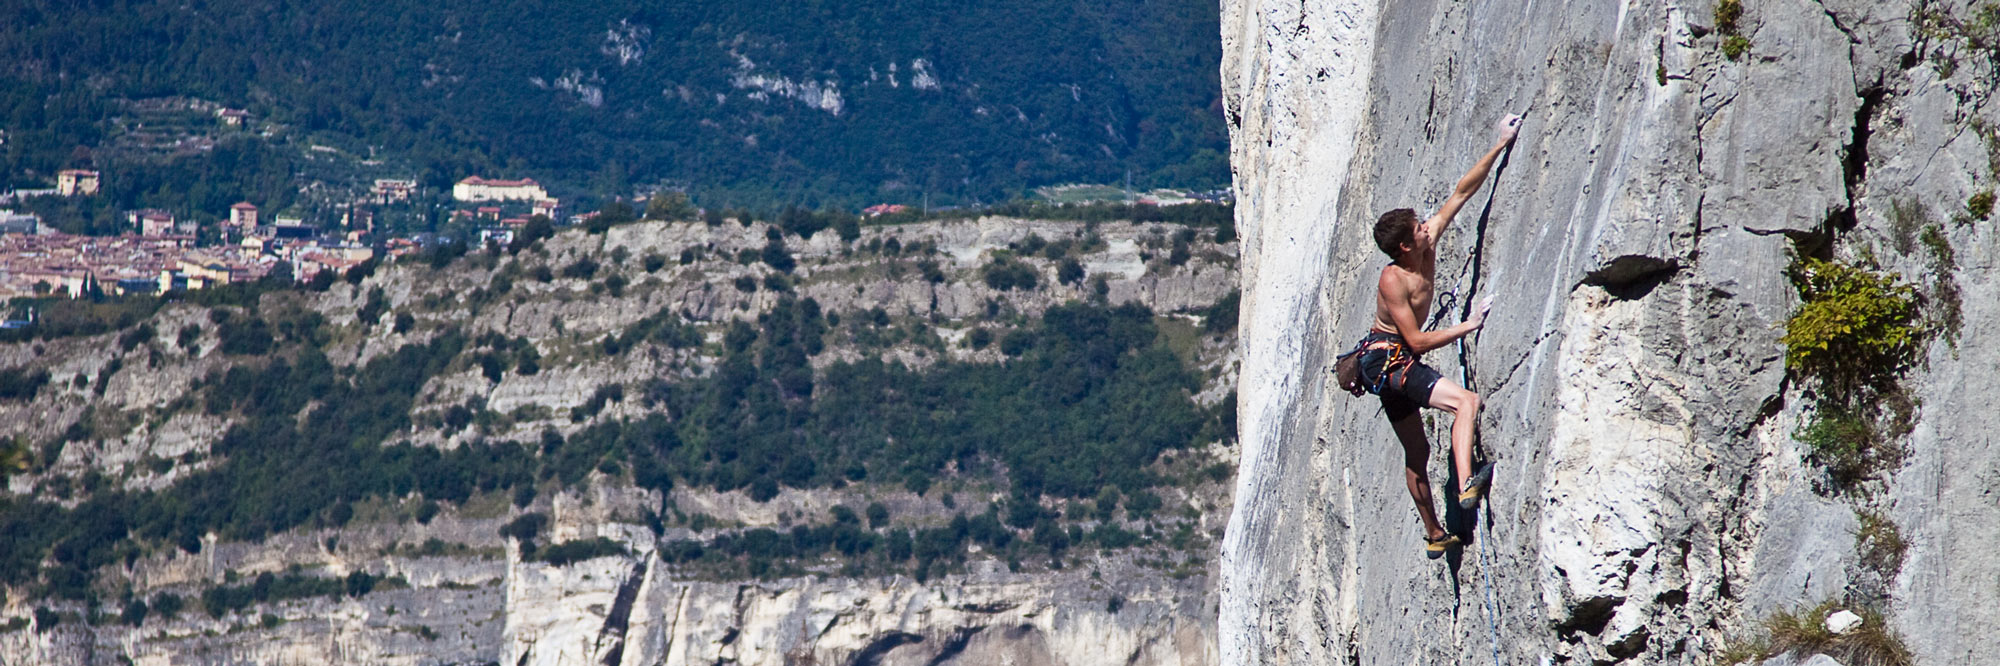 Klettern in Nago bei Arco am Gardasee